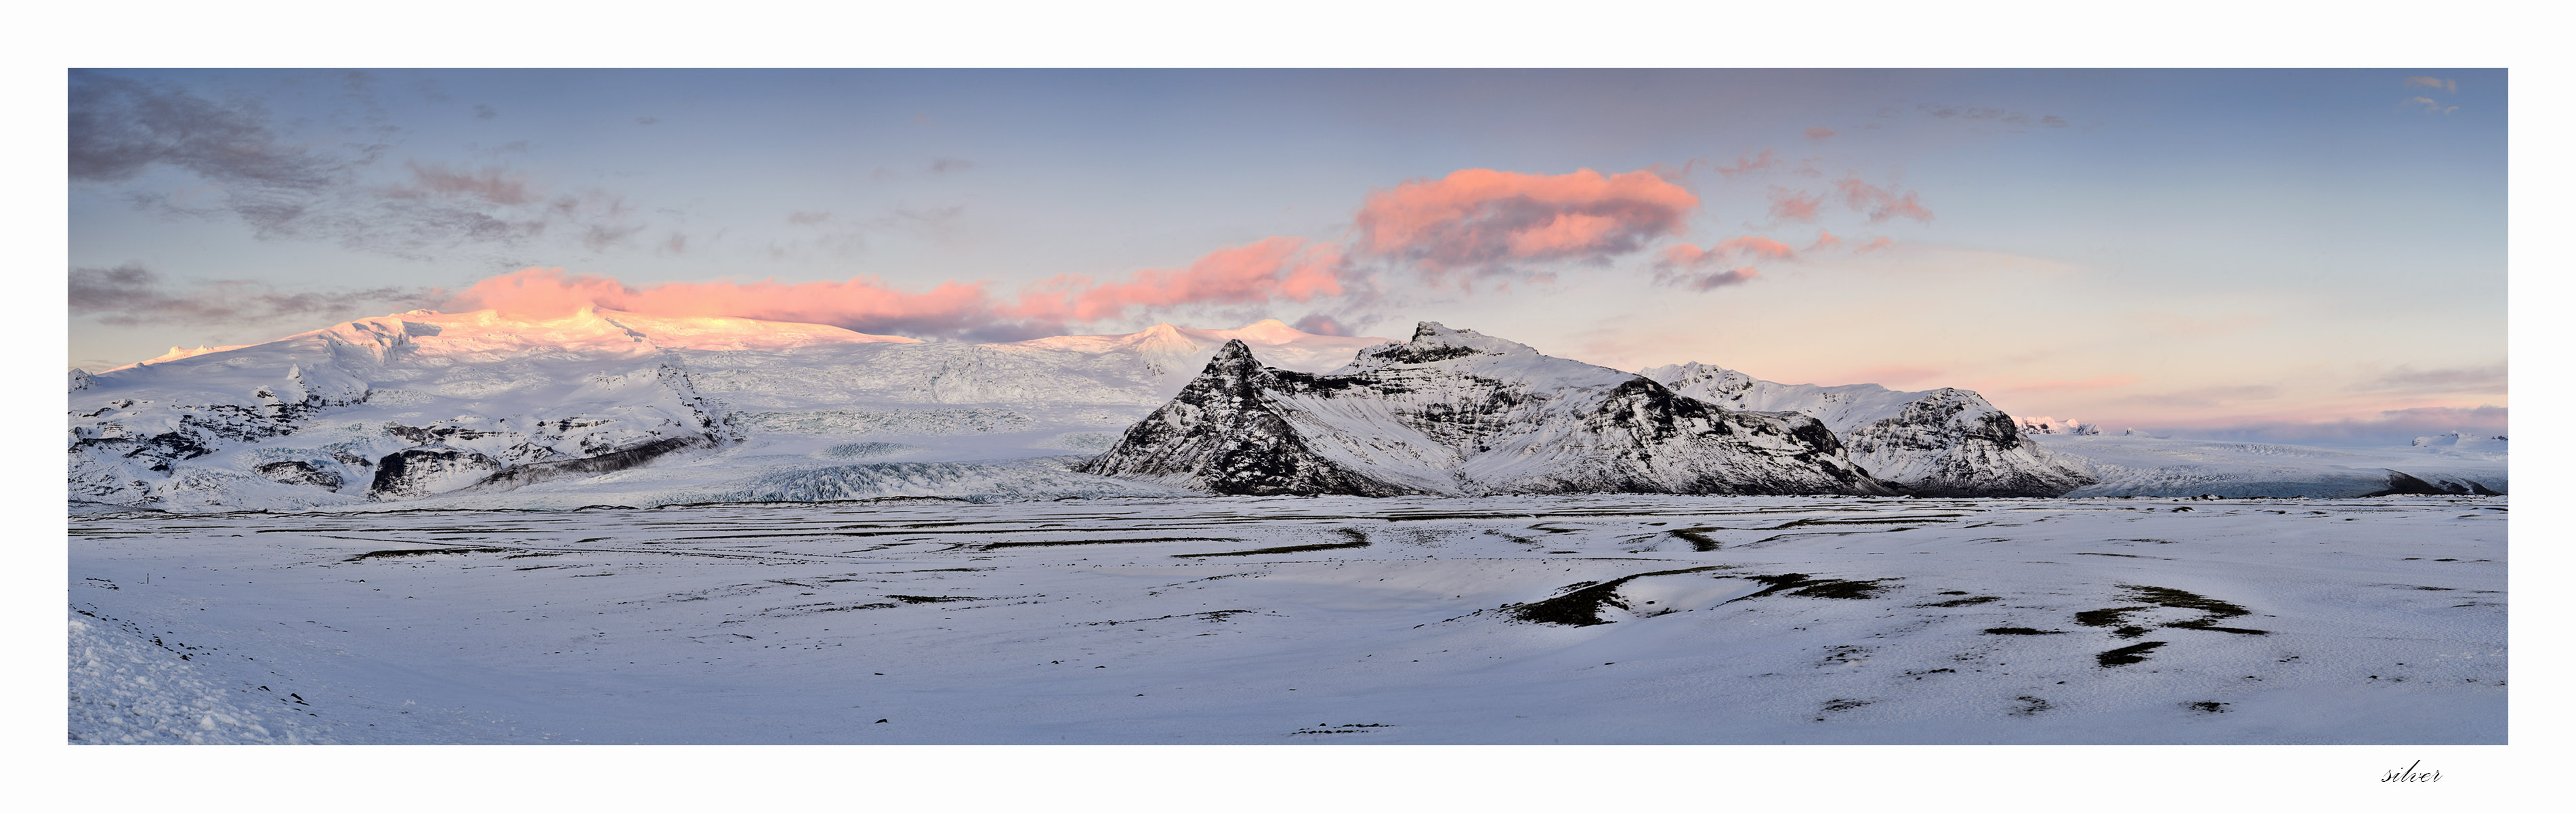 아이슬란드 파노라마2.jpg